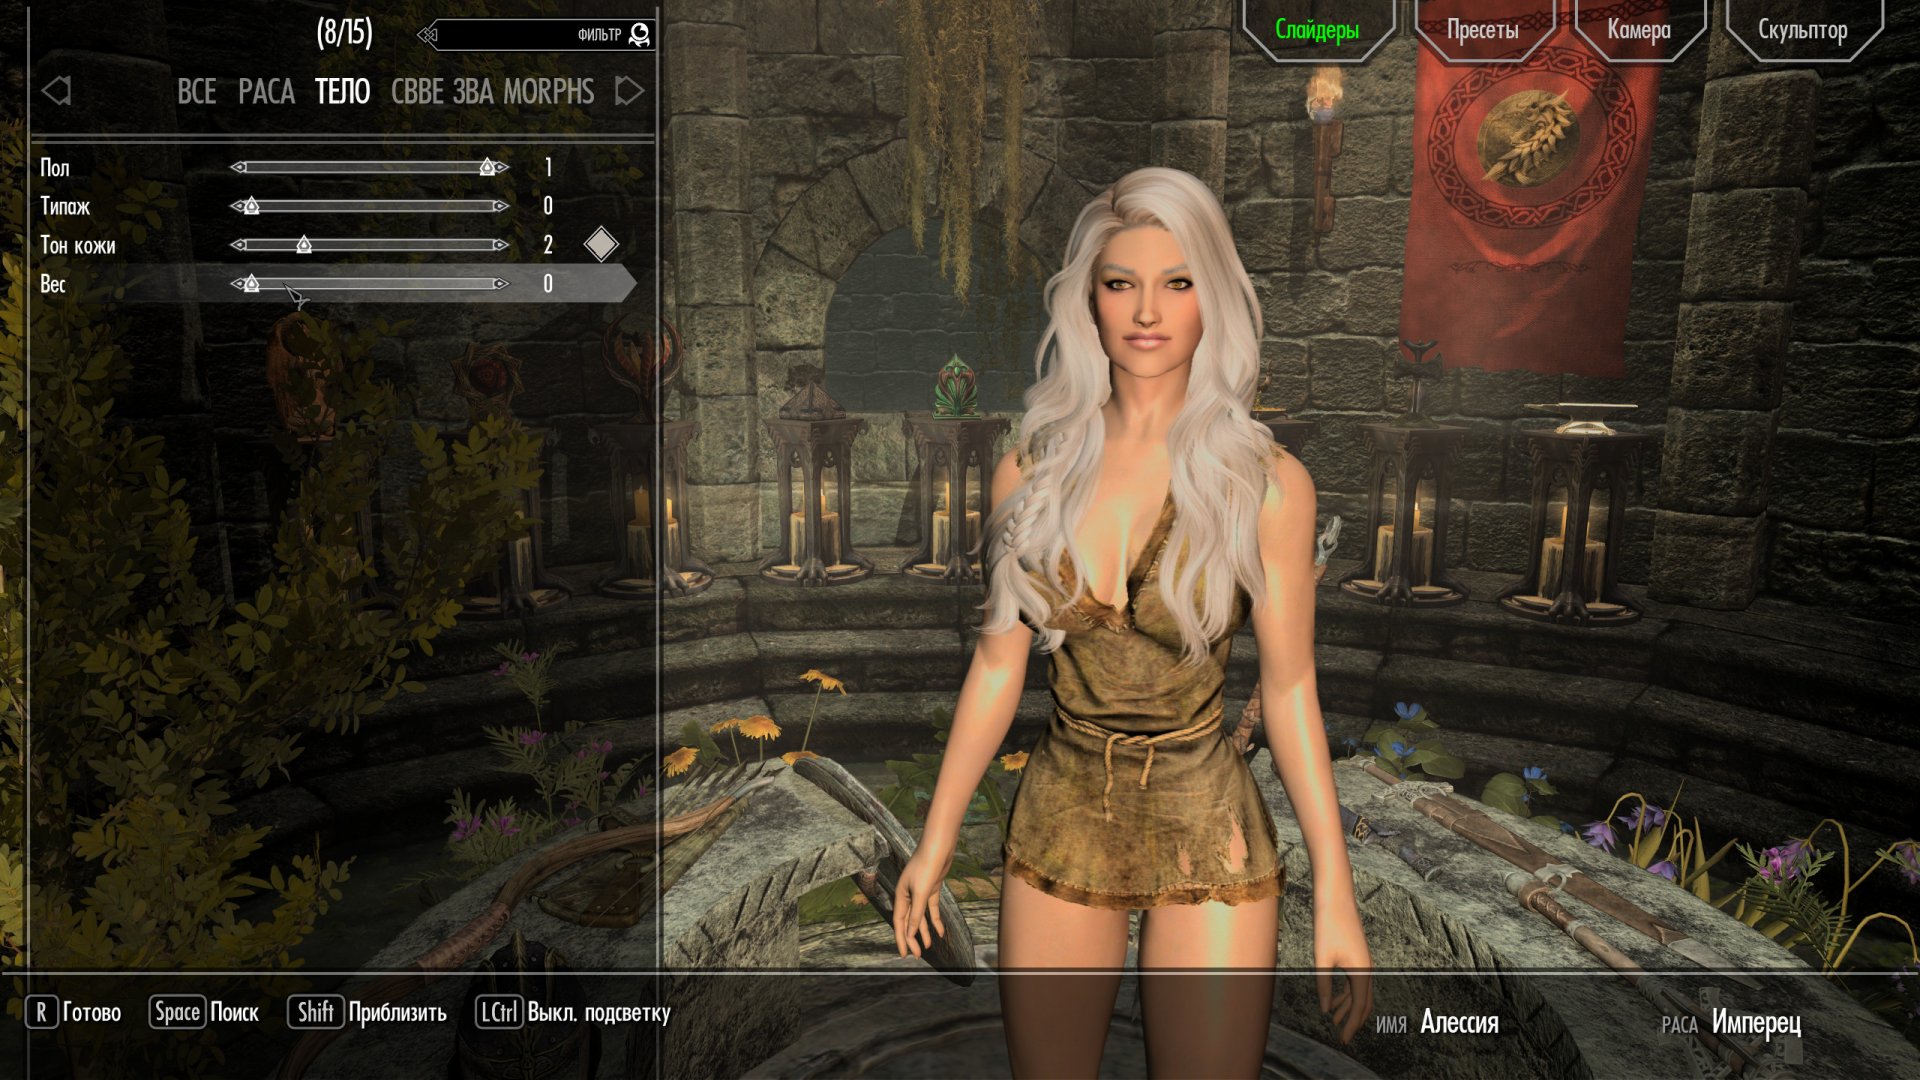 Skyrim: Эротические моды - Компаньоны и расы | RPG Russia